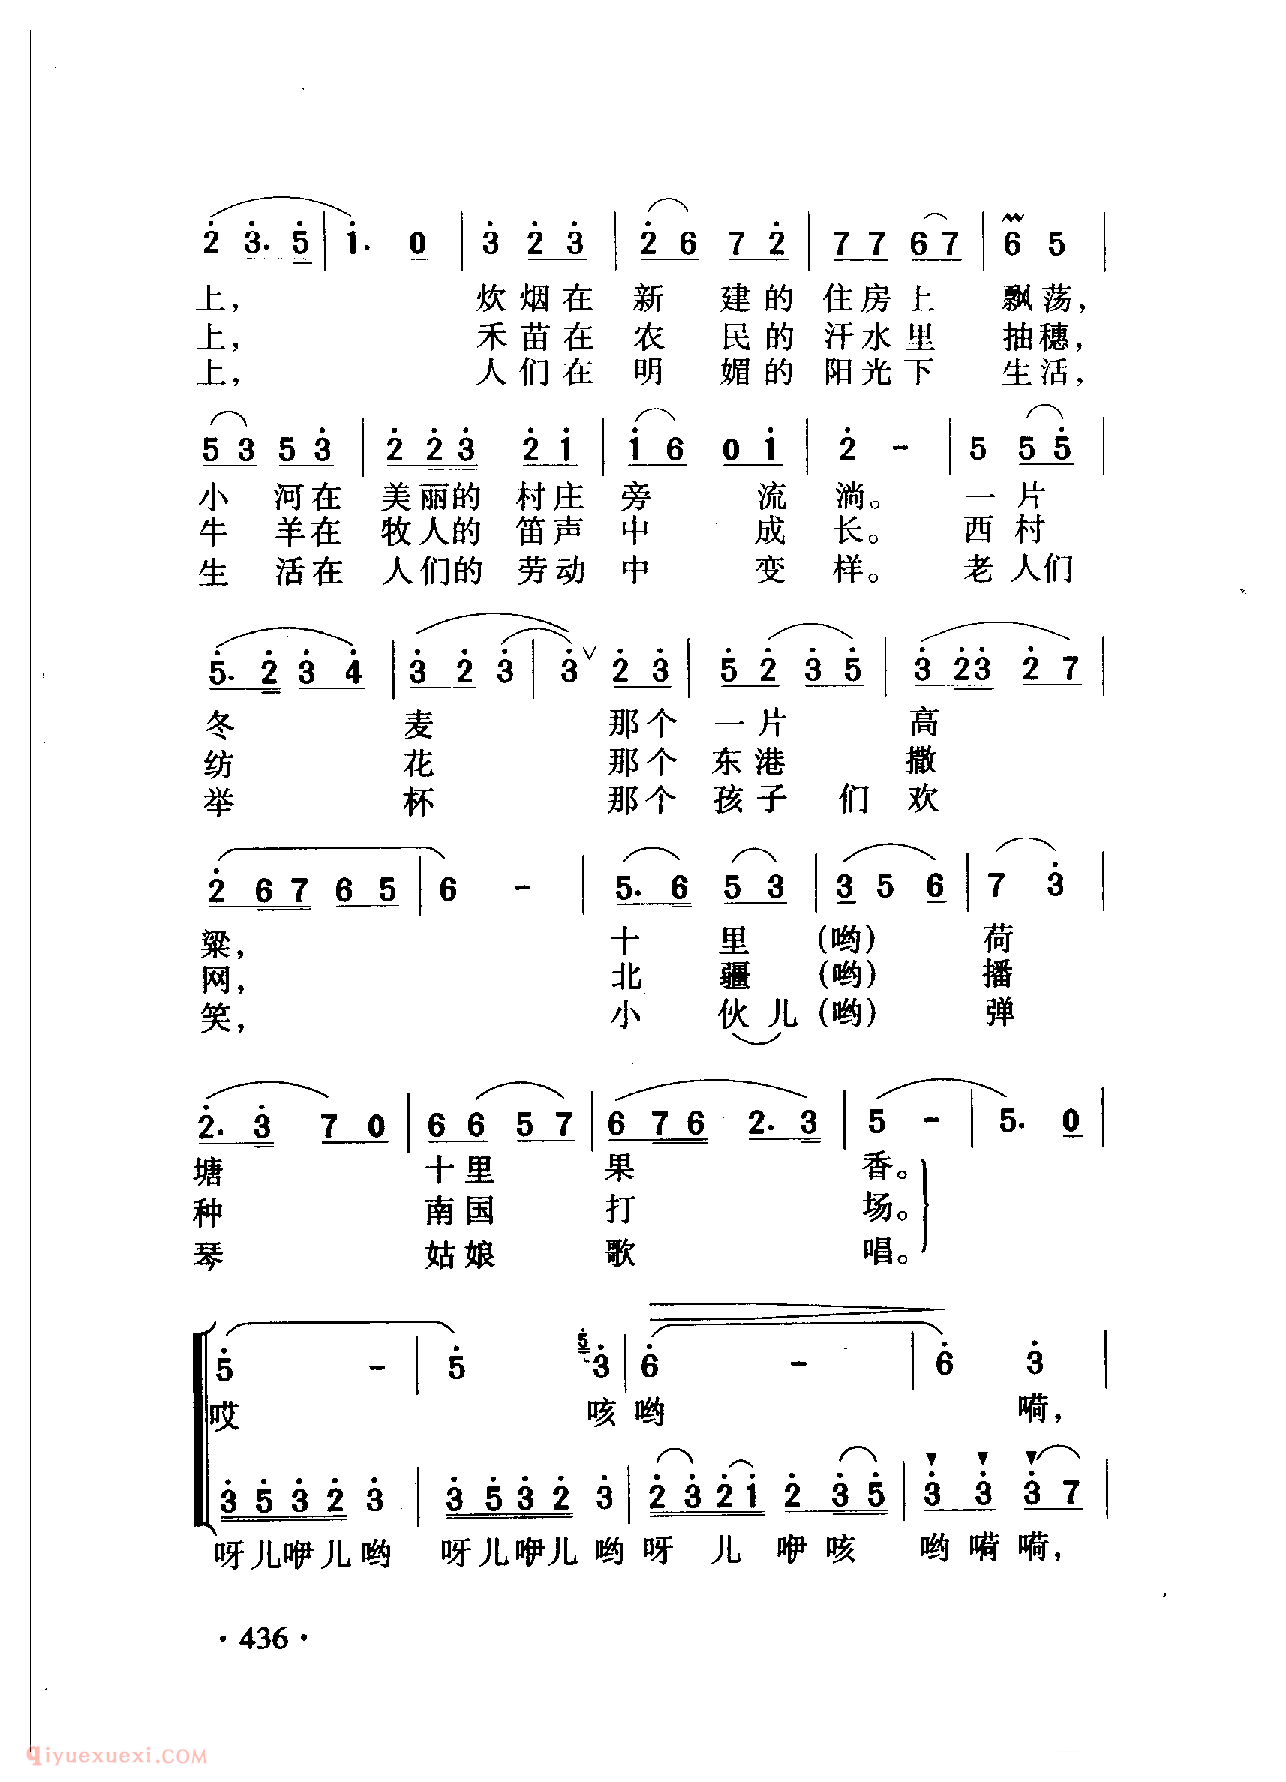 中国名歌[在希望的田野上]乐谱